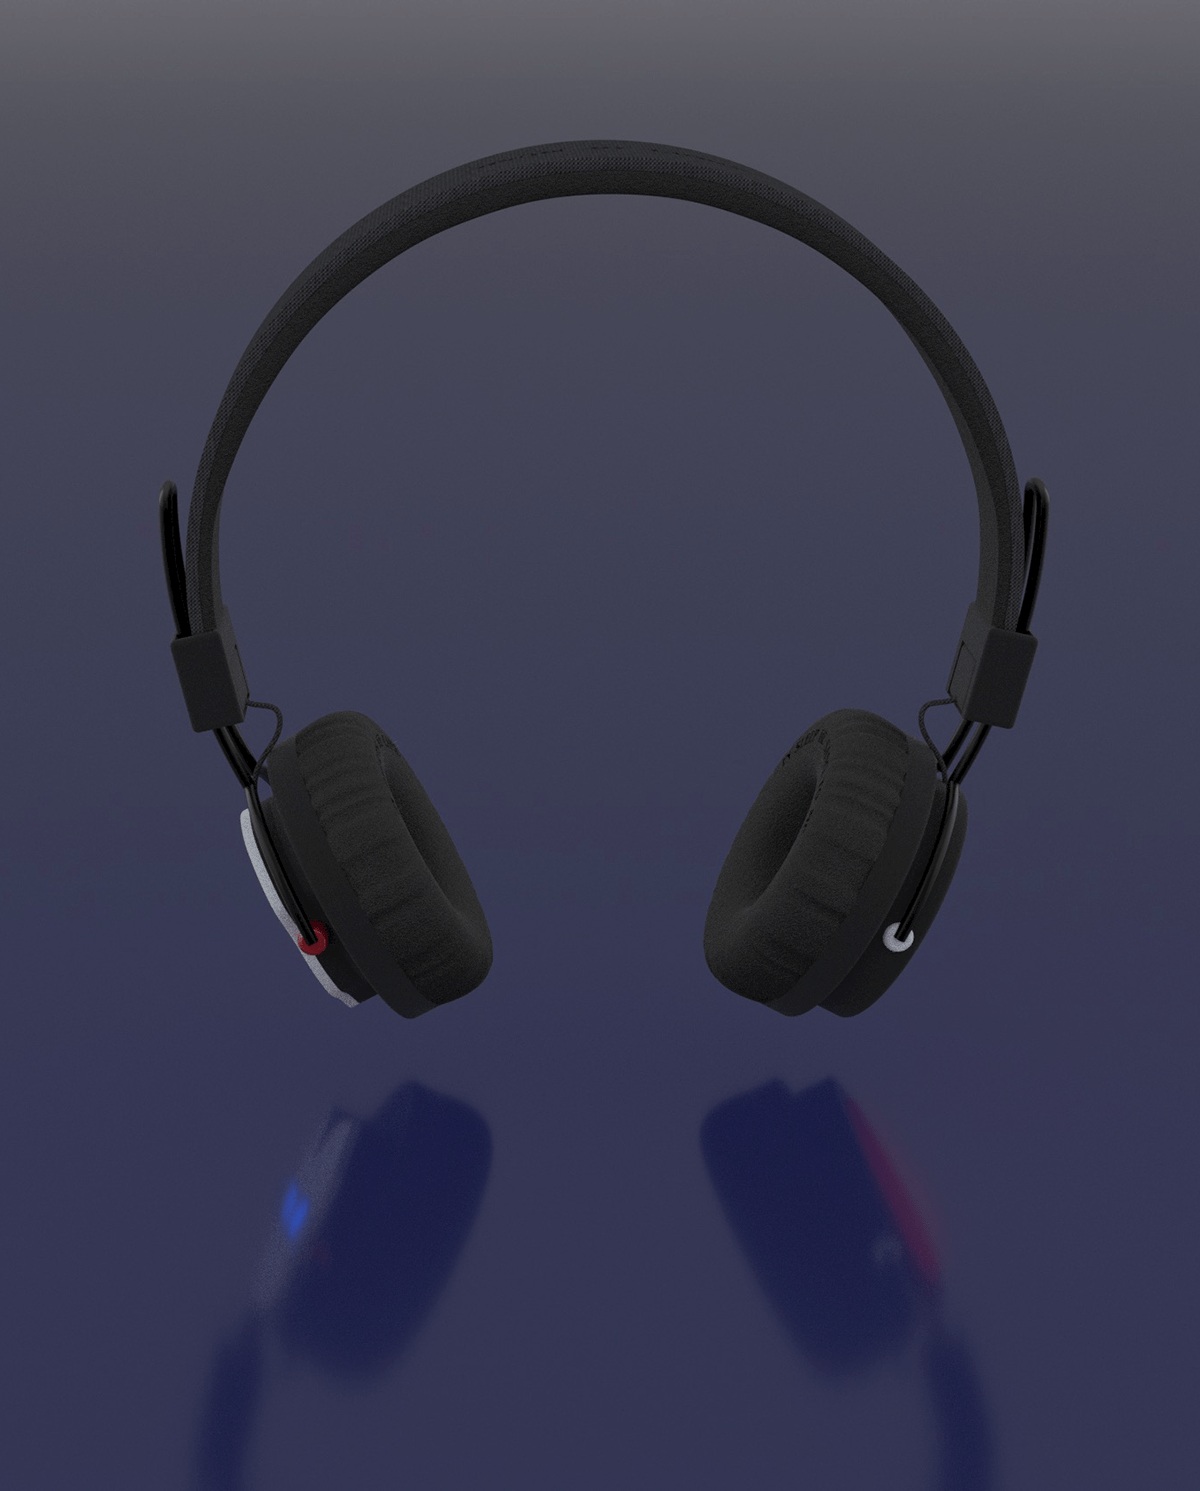 broadway earphones EarPods headphones merchandise music Musical phantom